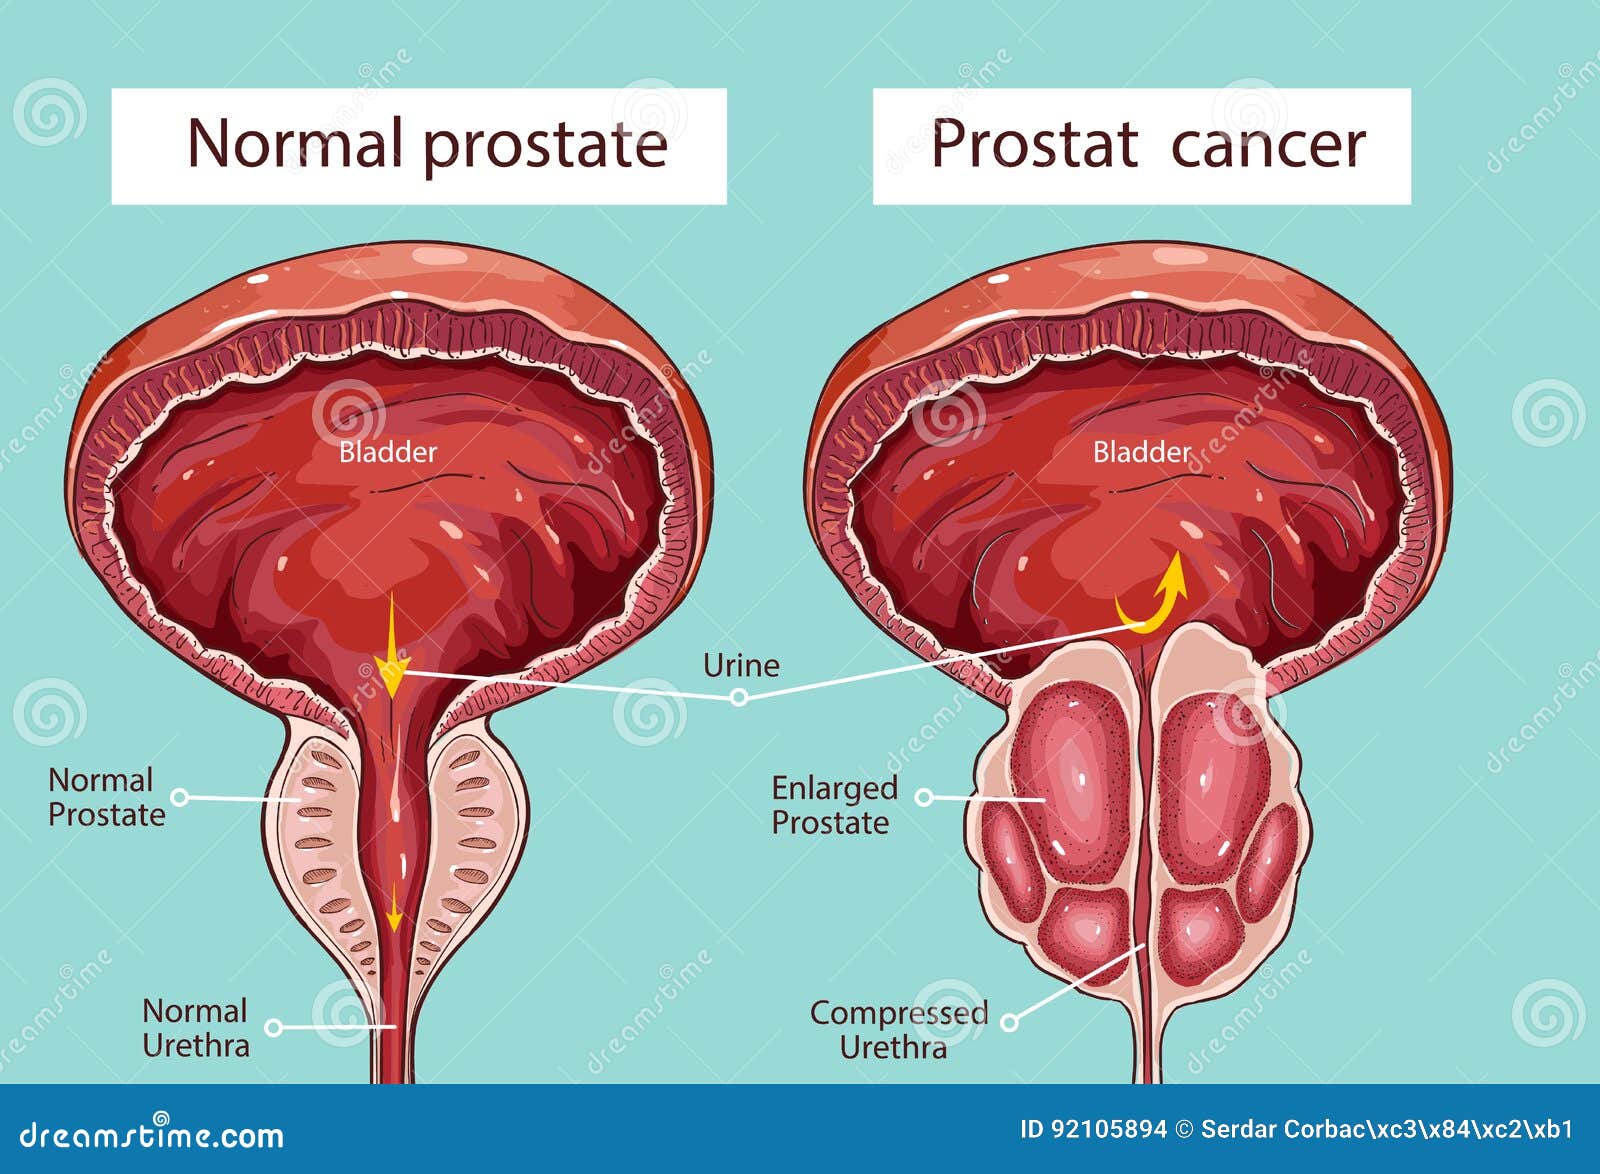 Fájl:Prostate normal 1.jpg